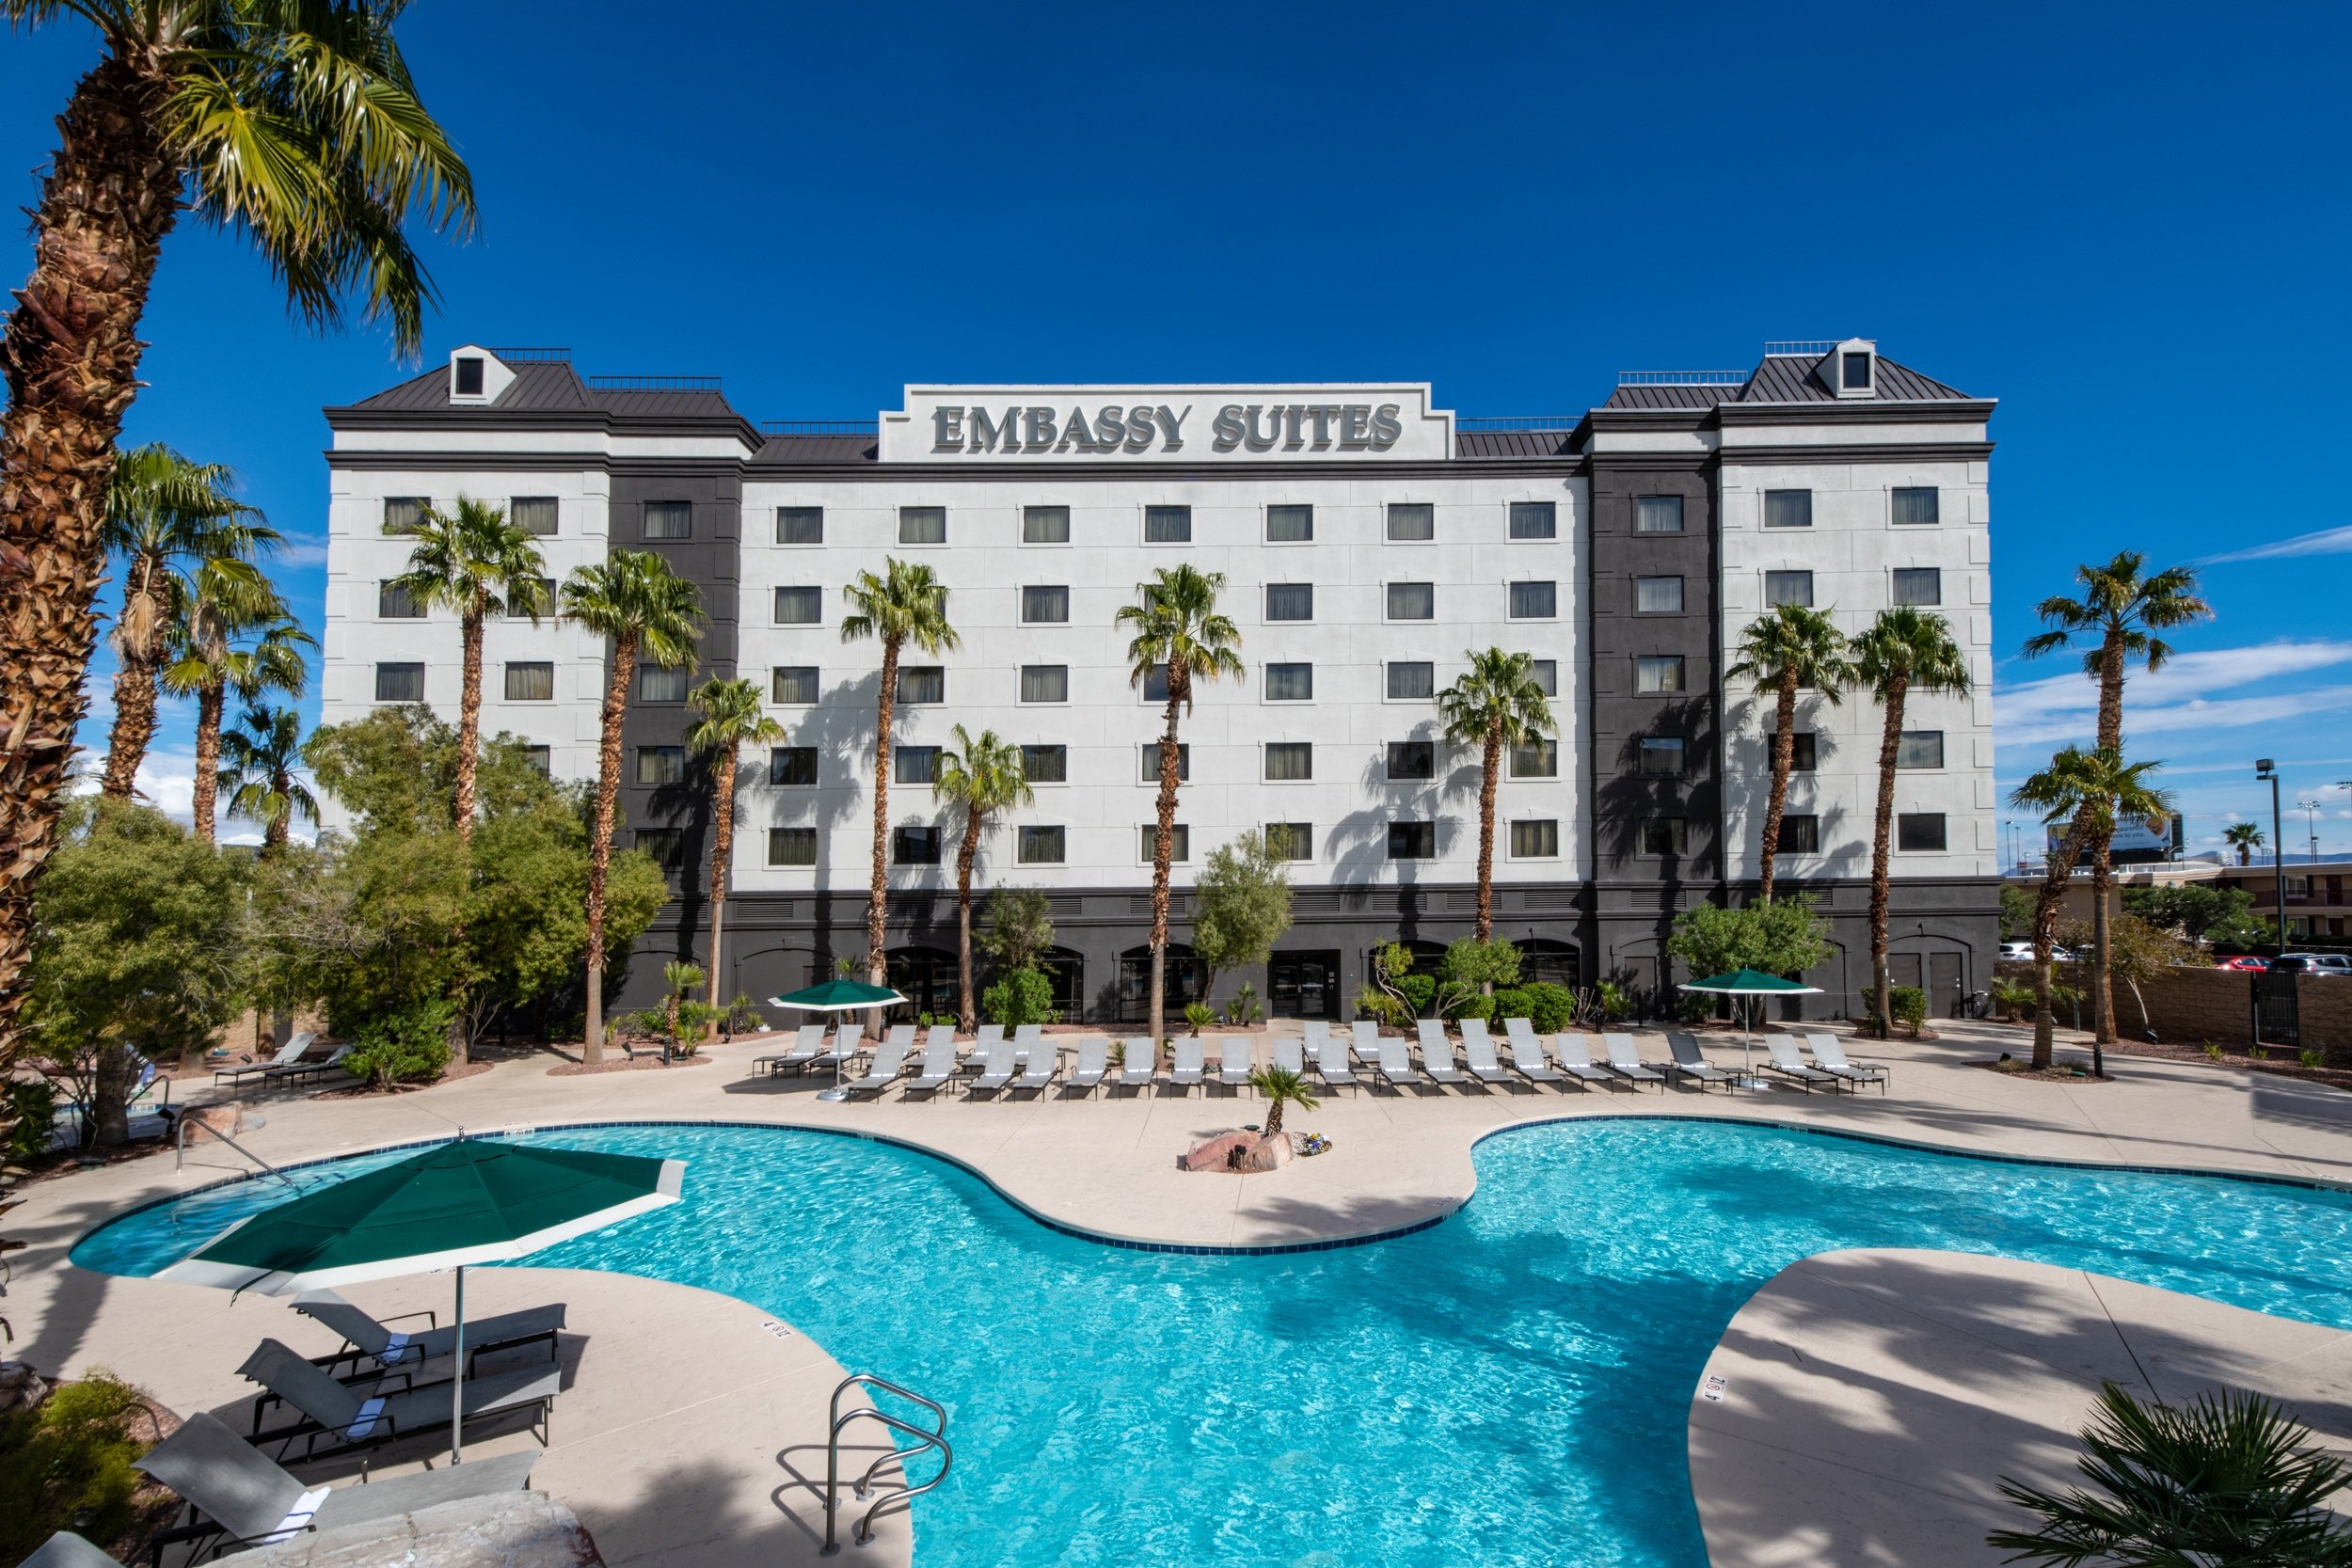 Embassy Suites Las Vegas Pool 